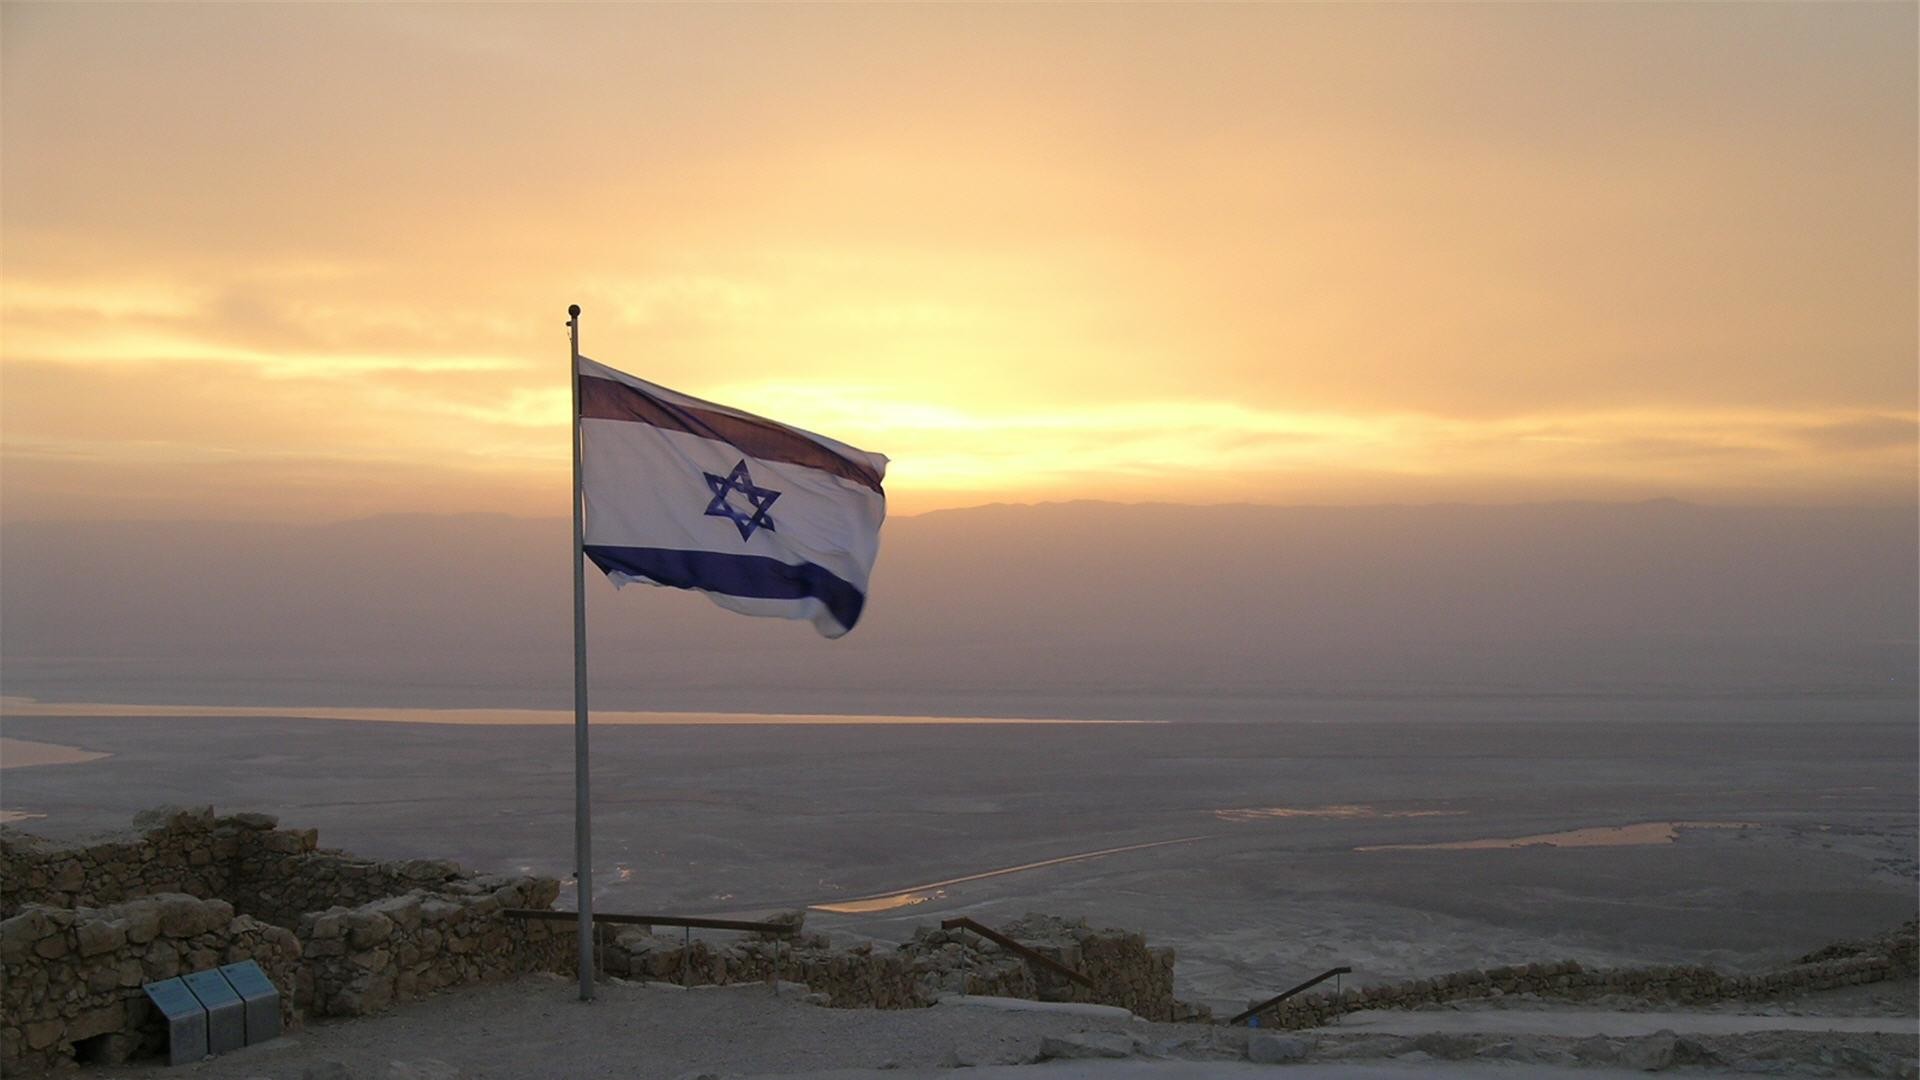 Israel Wallpaper Landscapes Image